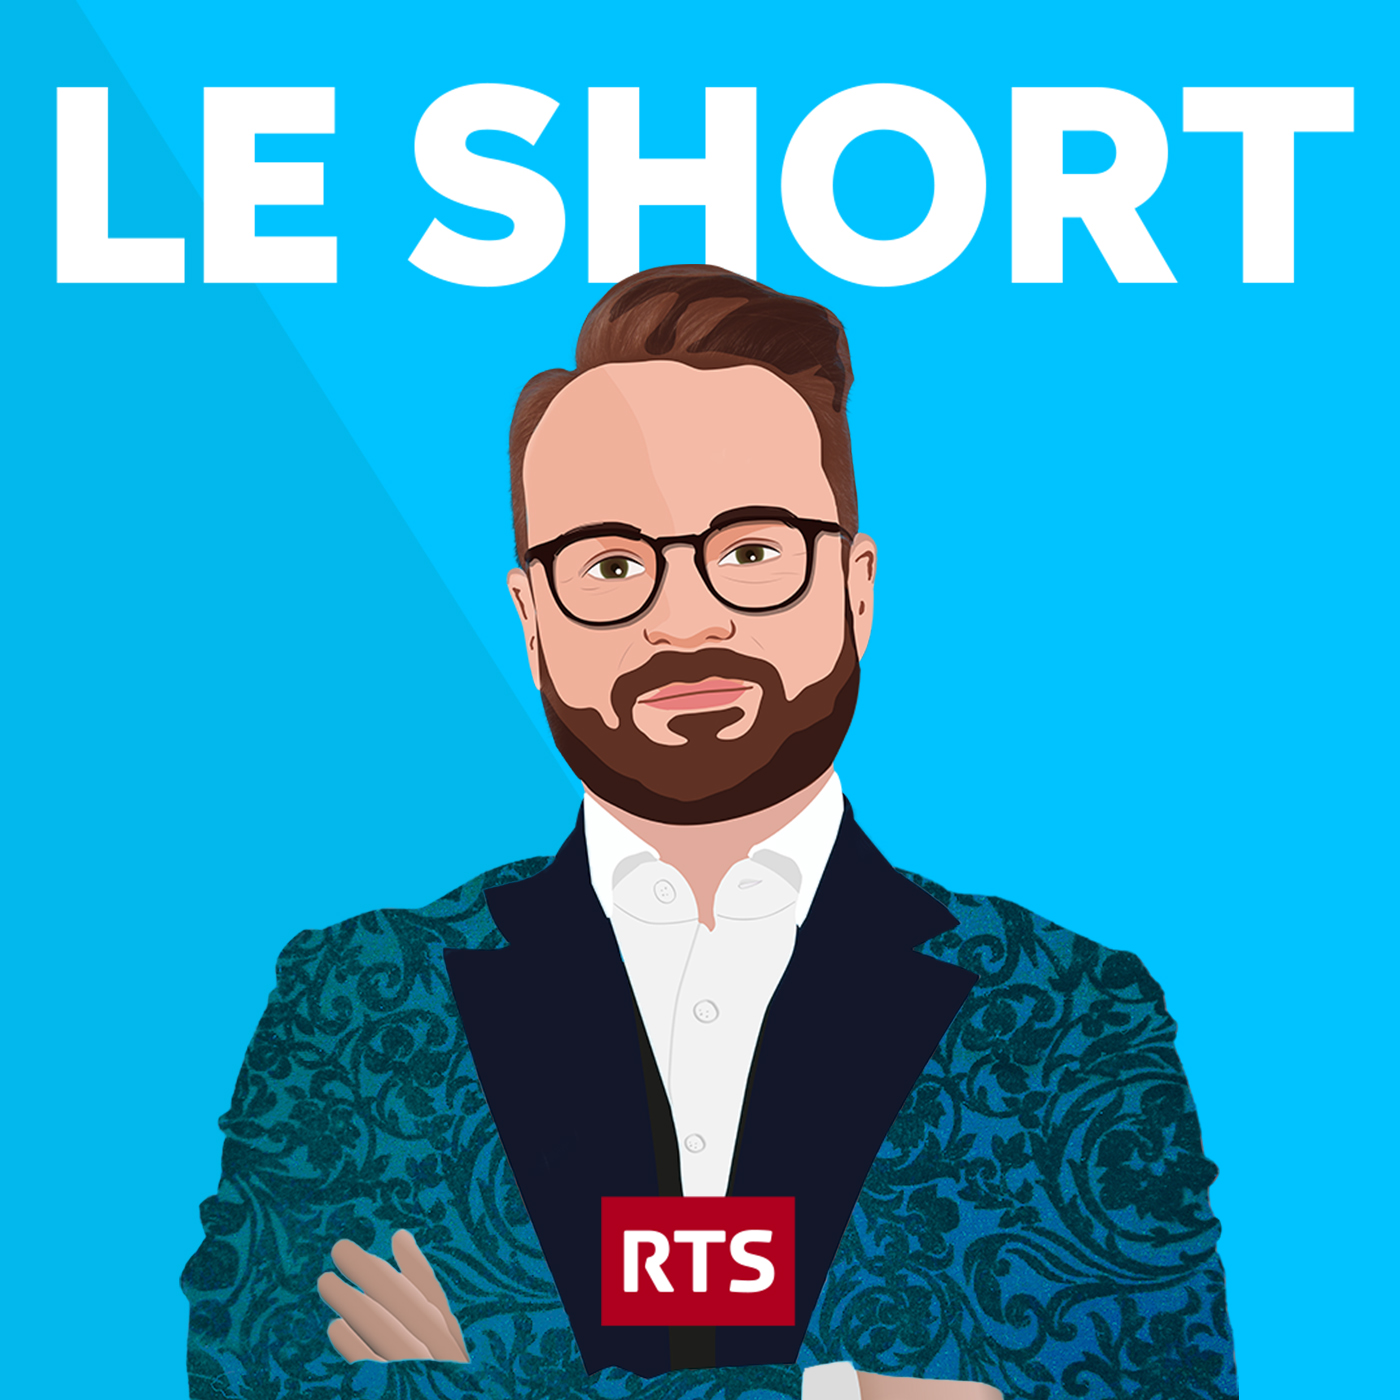 Le Short - RTS